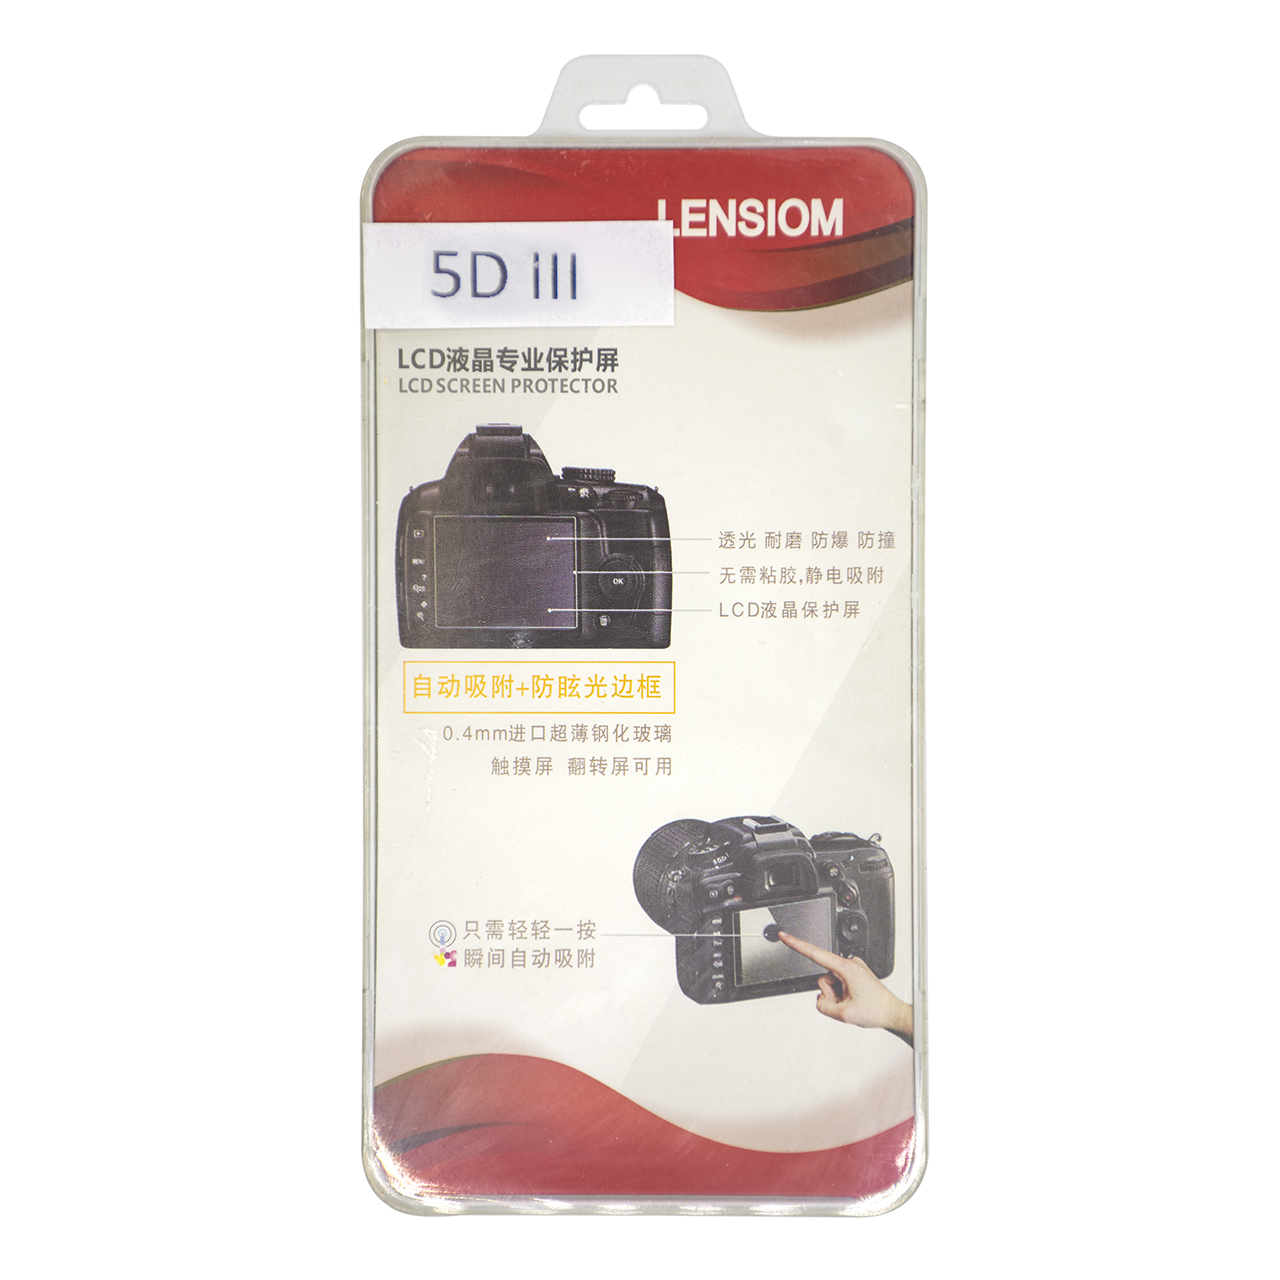 محافظ صفحه نمایش دوربین لنزیوم مدل L5D مناسب برای کانن 5D III